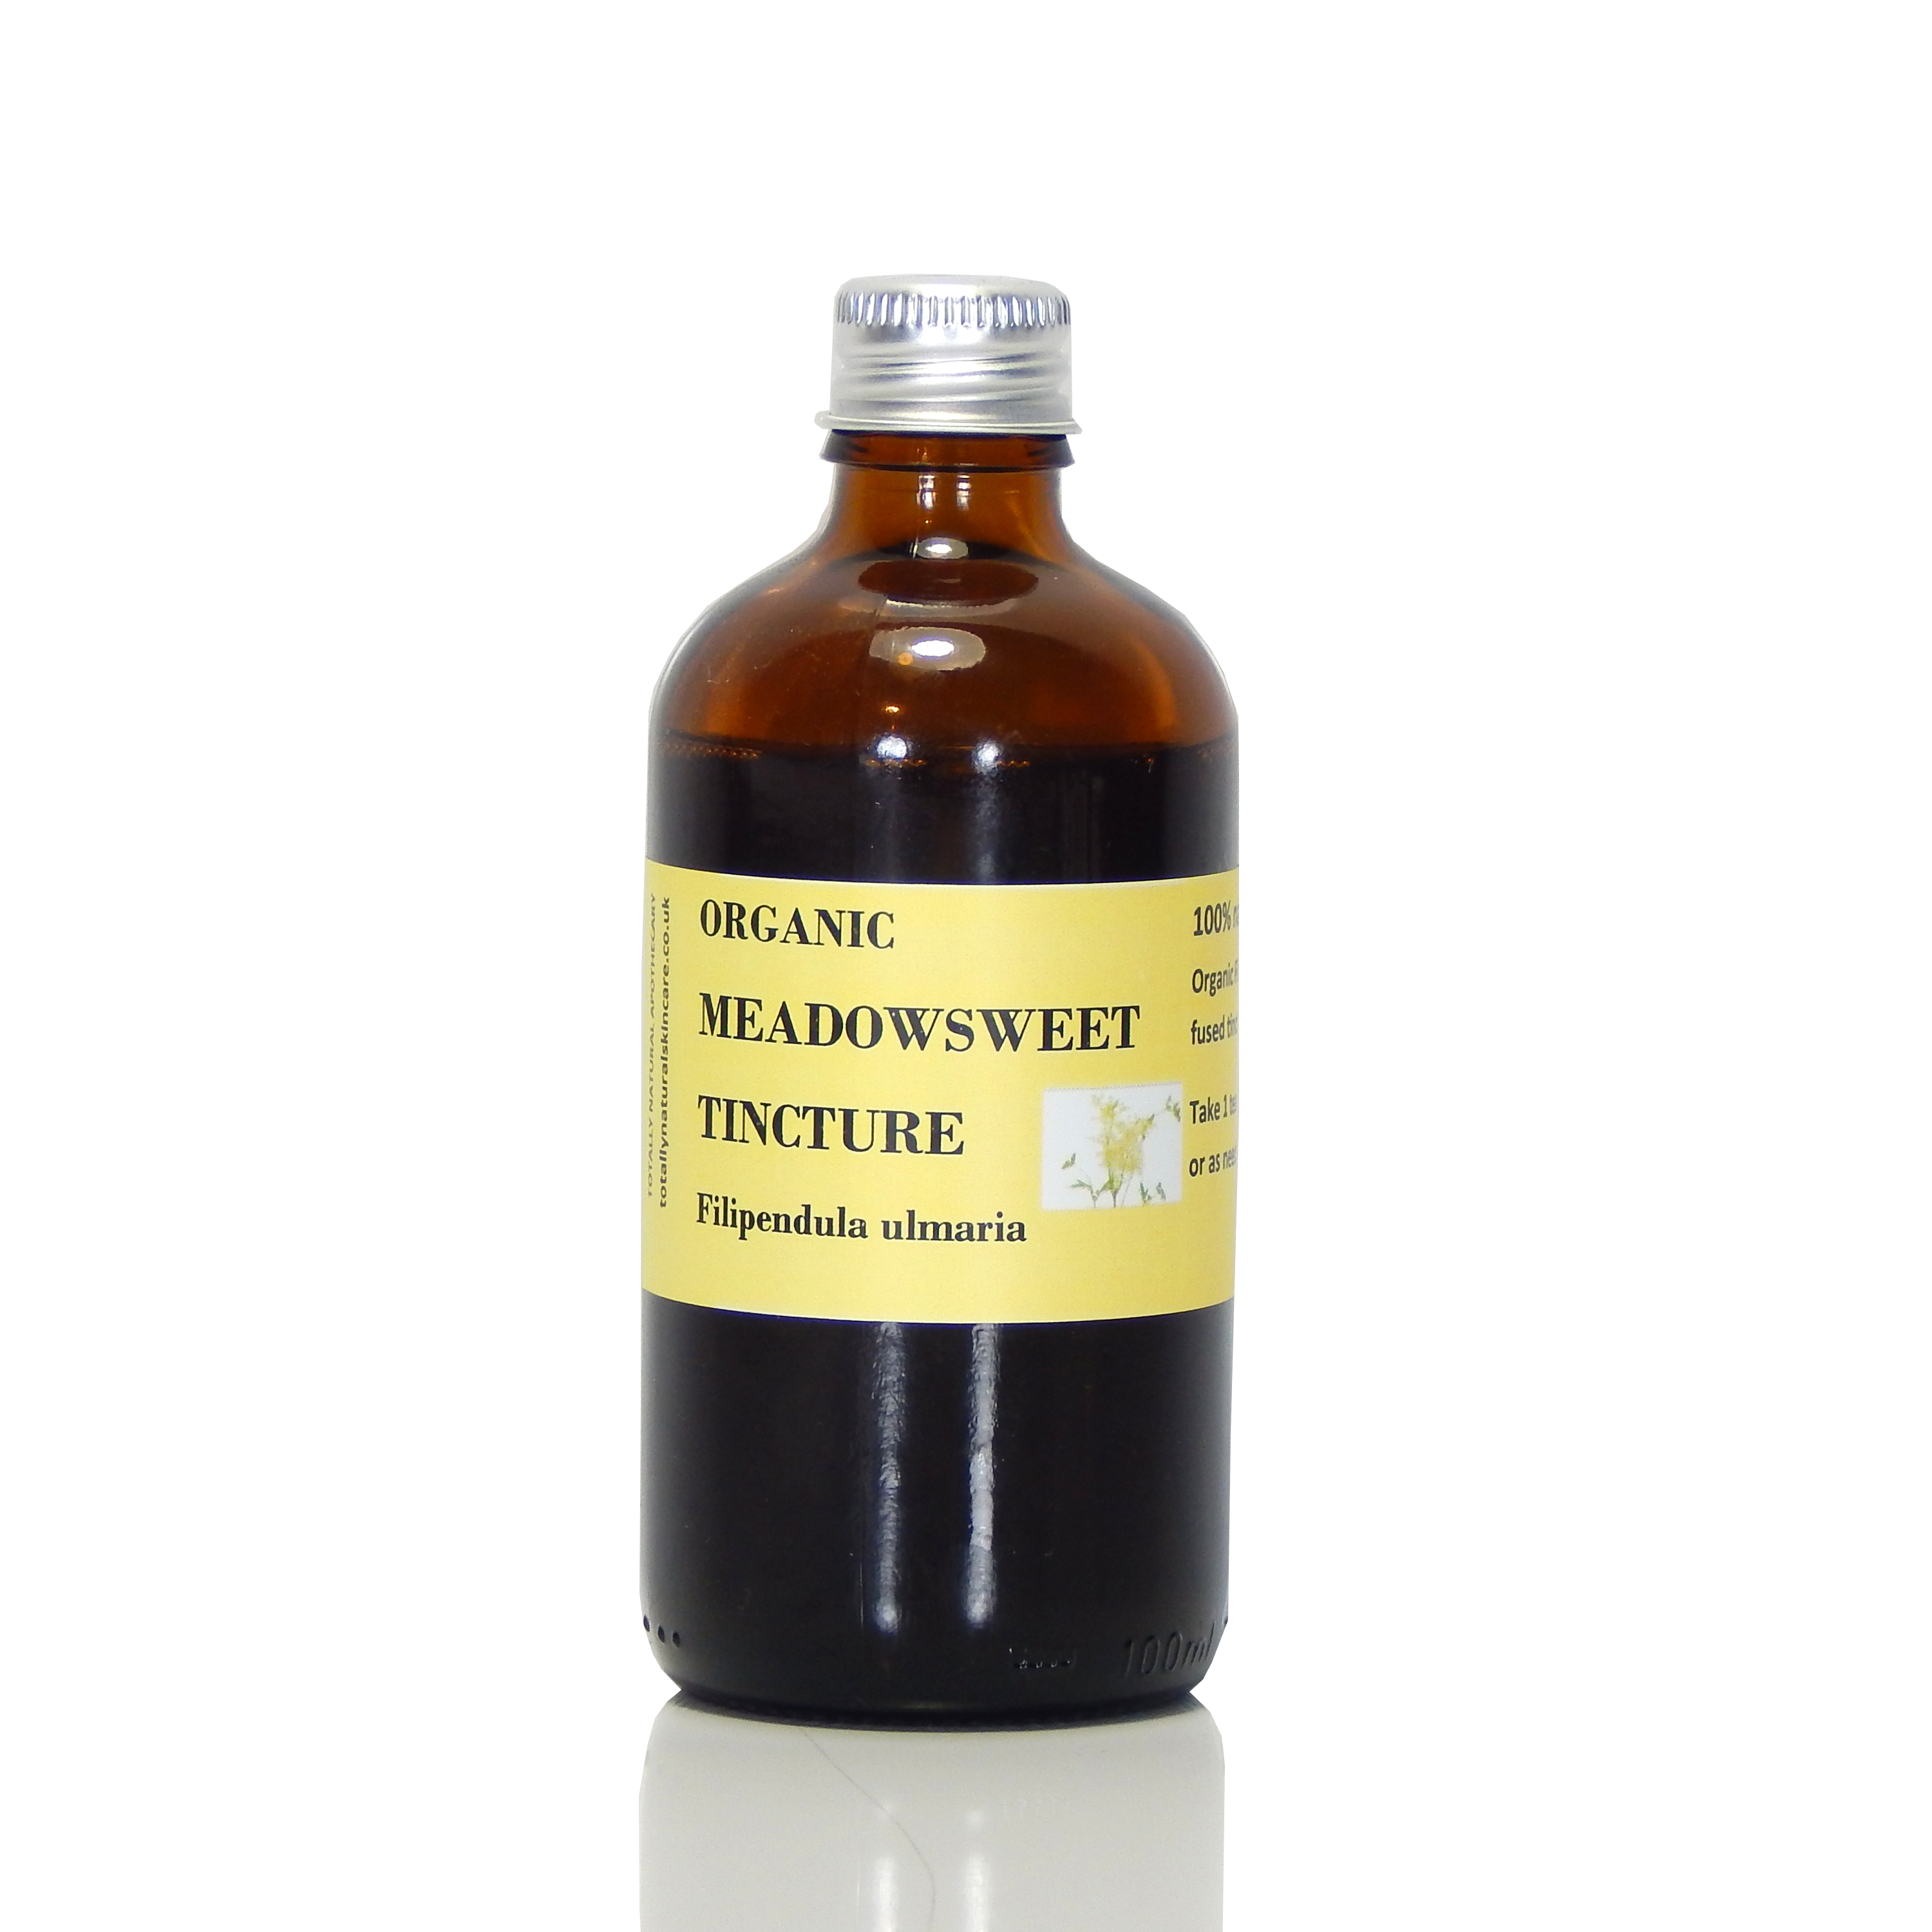 Meadowsweet Tincture (organic)